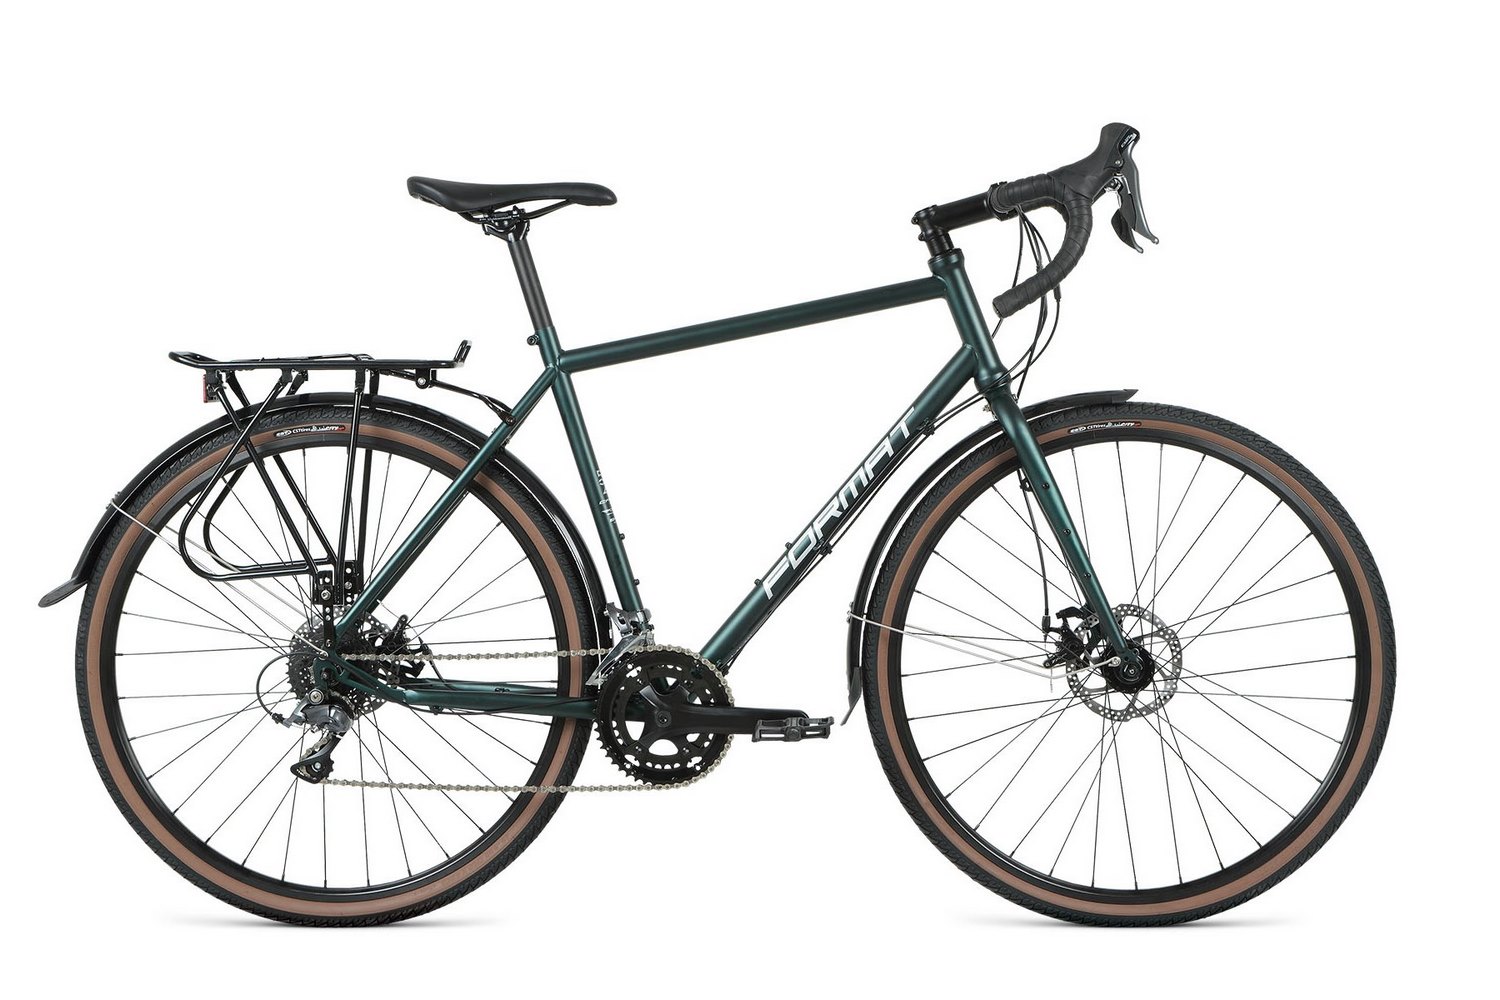  Отзывы о Городском велосипеде Format 5222 700С 2021